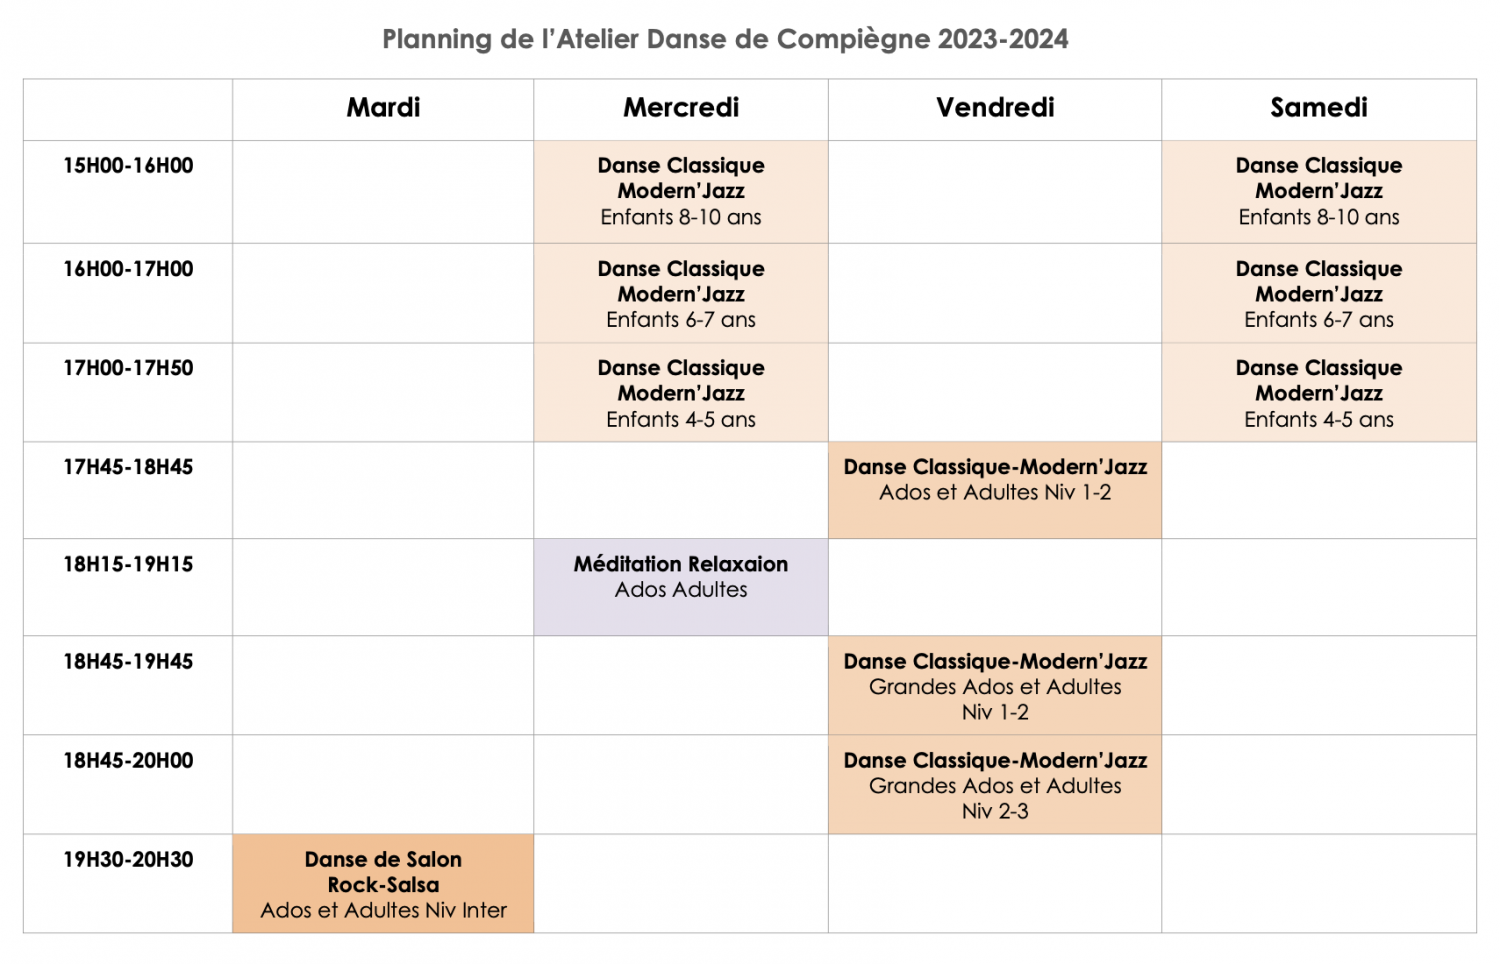 Planning de l'Atelier Danse, Méditation, Relaxation à Compiègne - 2023-2024